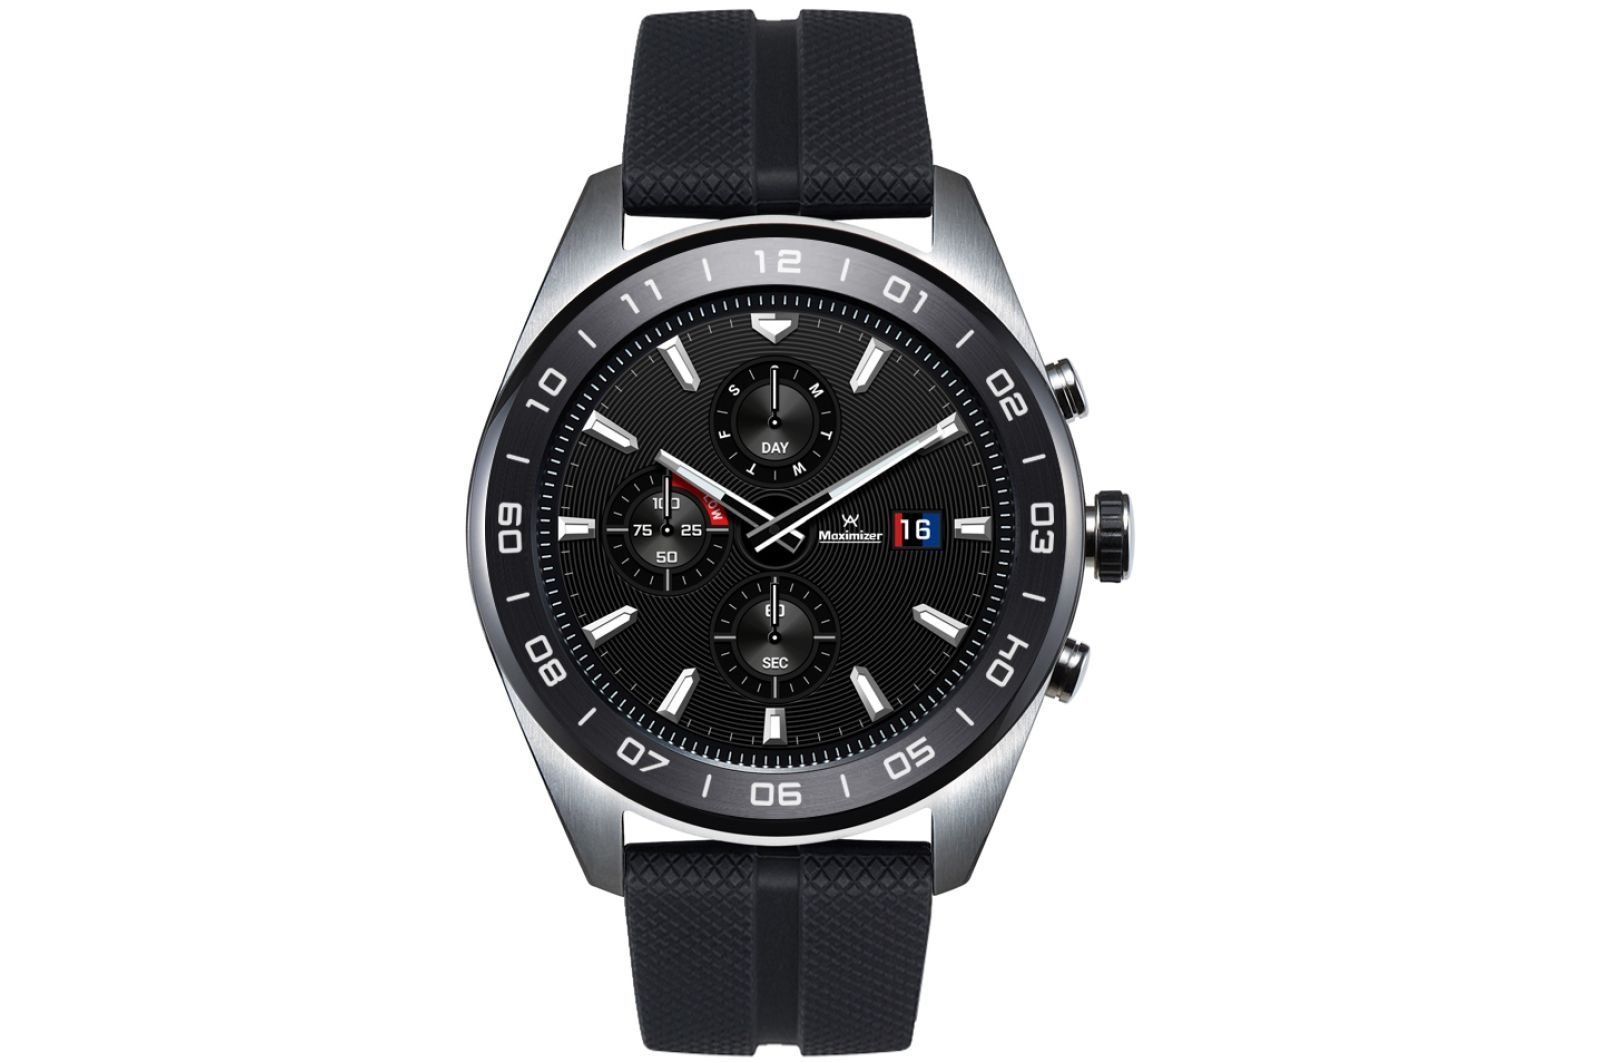 Έξυπνο ρολόι LG Watch W7 - πλεονεκτήματα και μειονεκτήματα